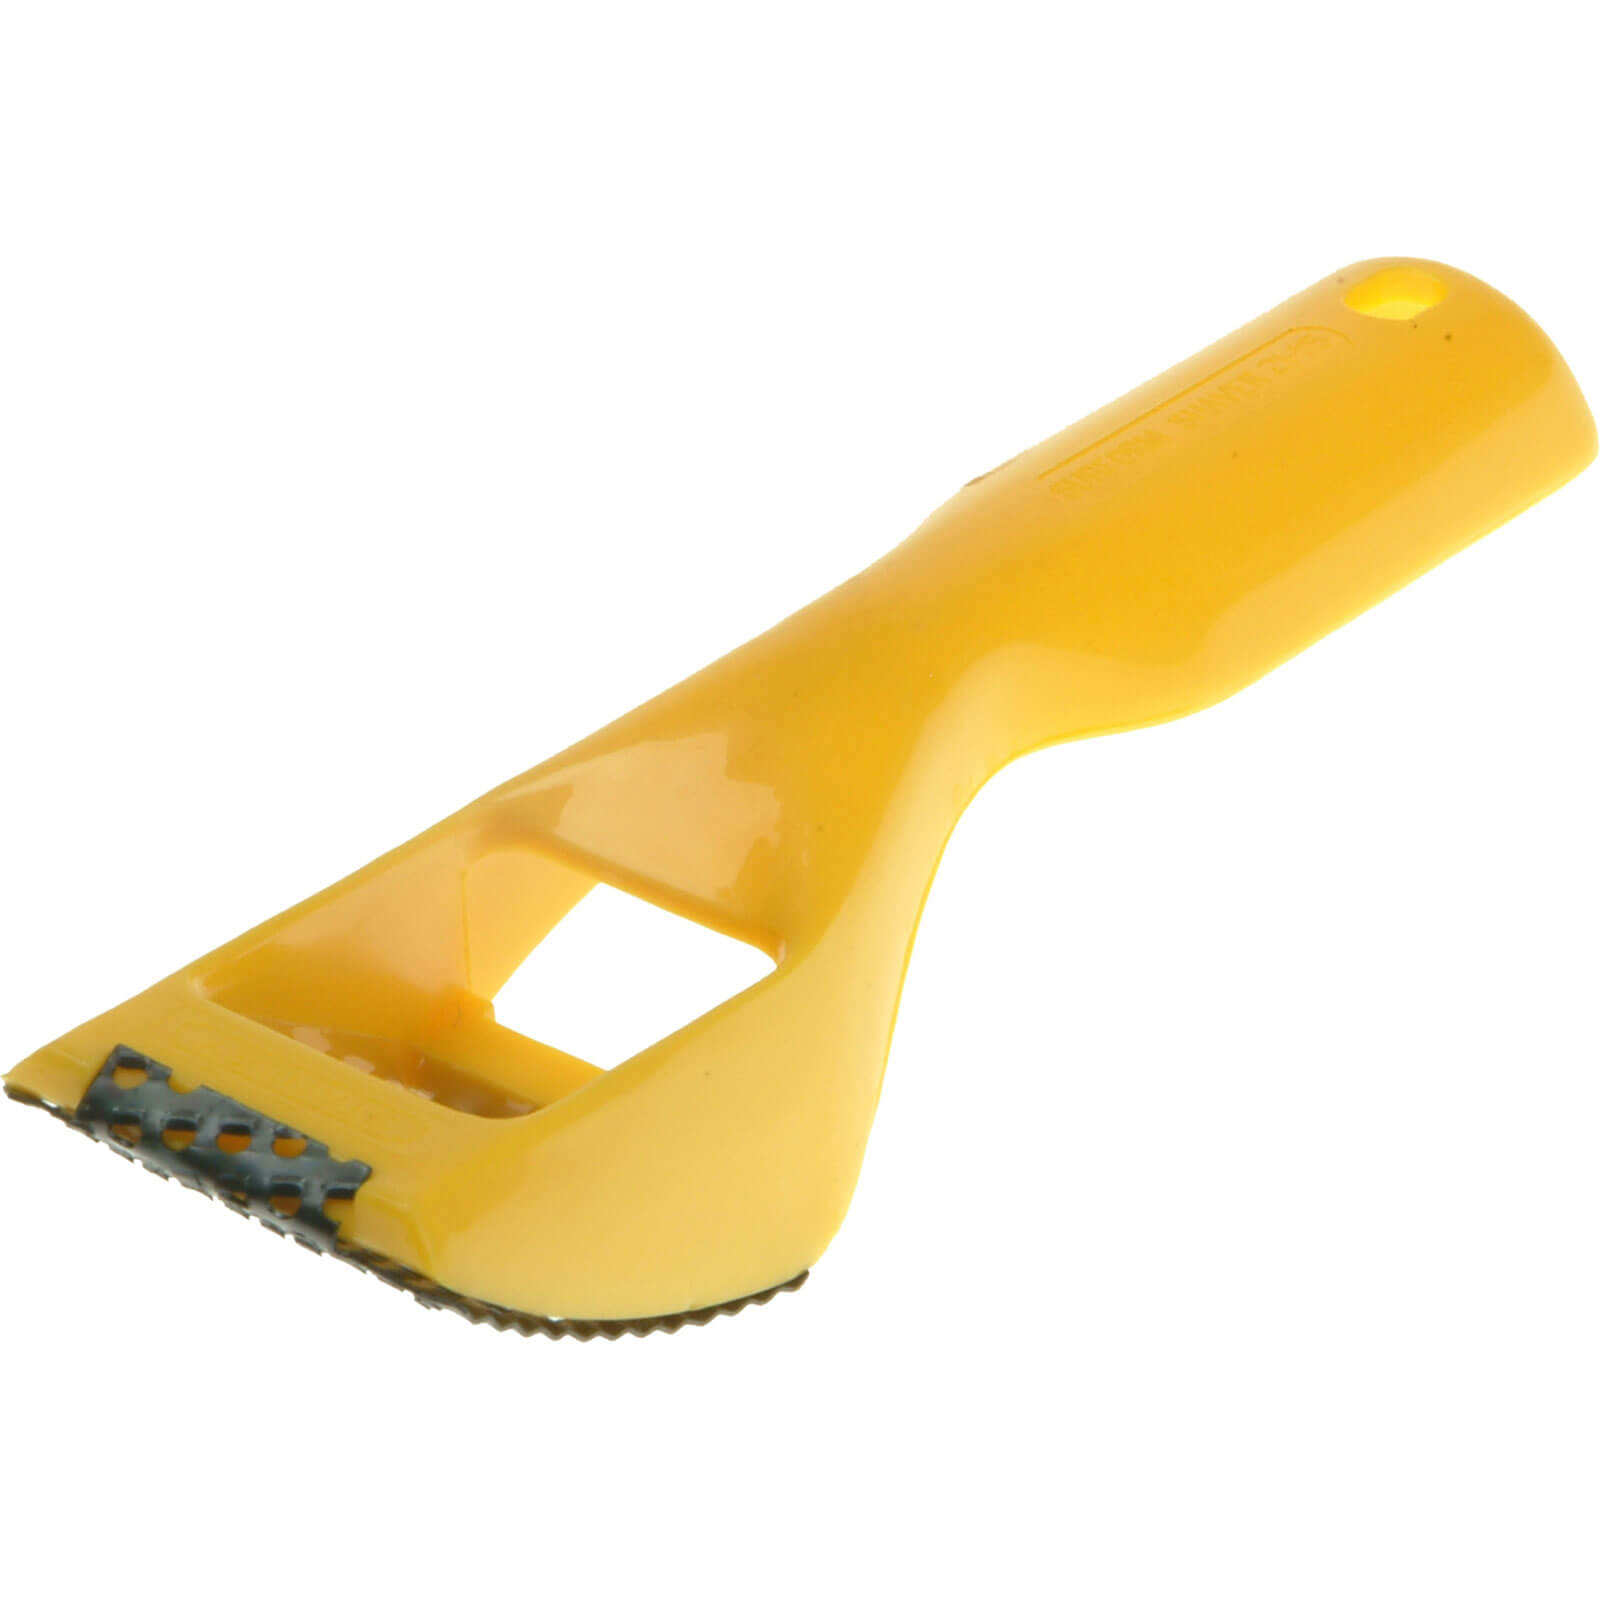 Image of Stanley Surform Shaver Tool 7"